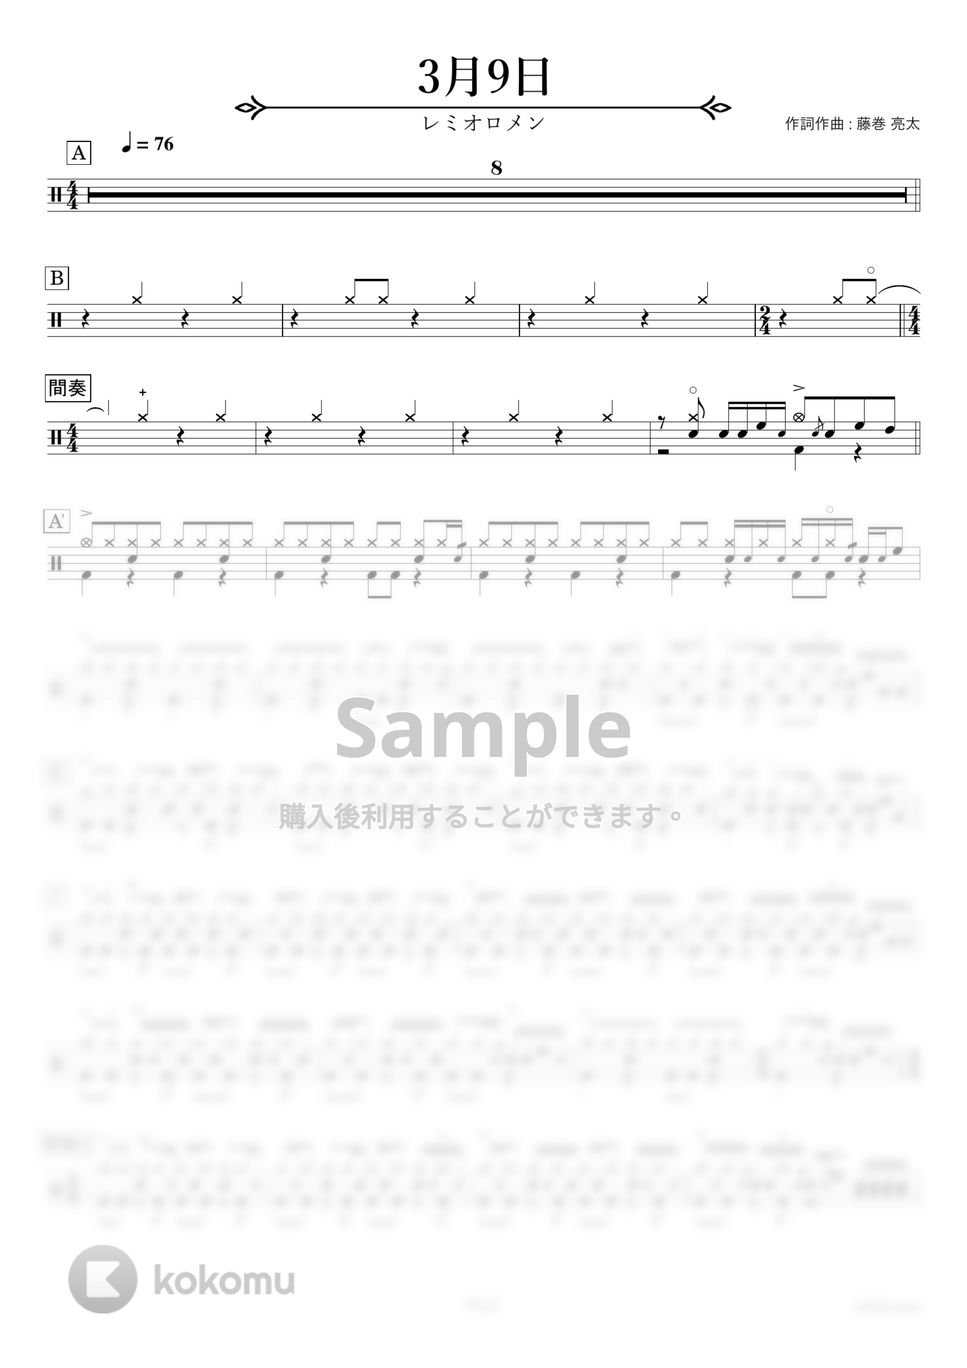 レミオロメン - 3月9日 【ドラム楽譜〔完コピ〕】.pdf by HYdrums